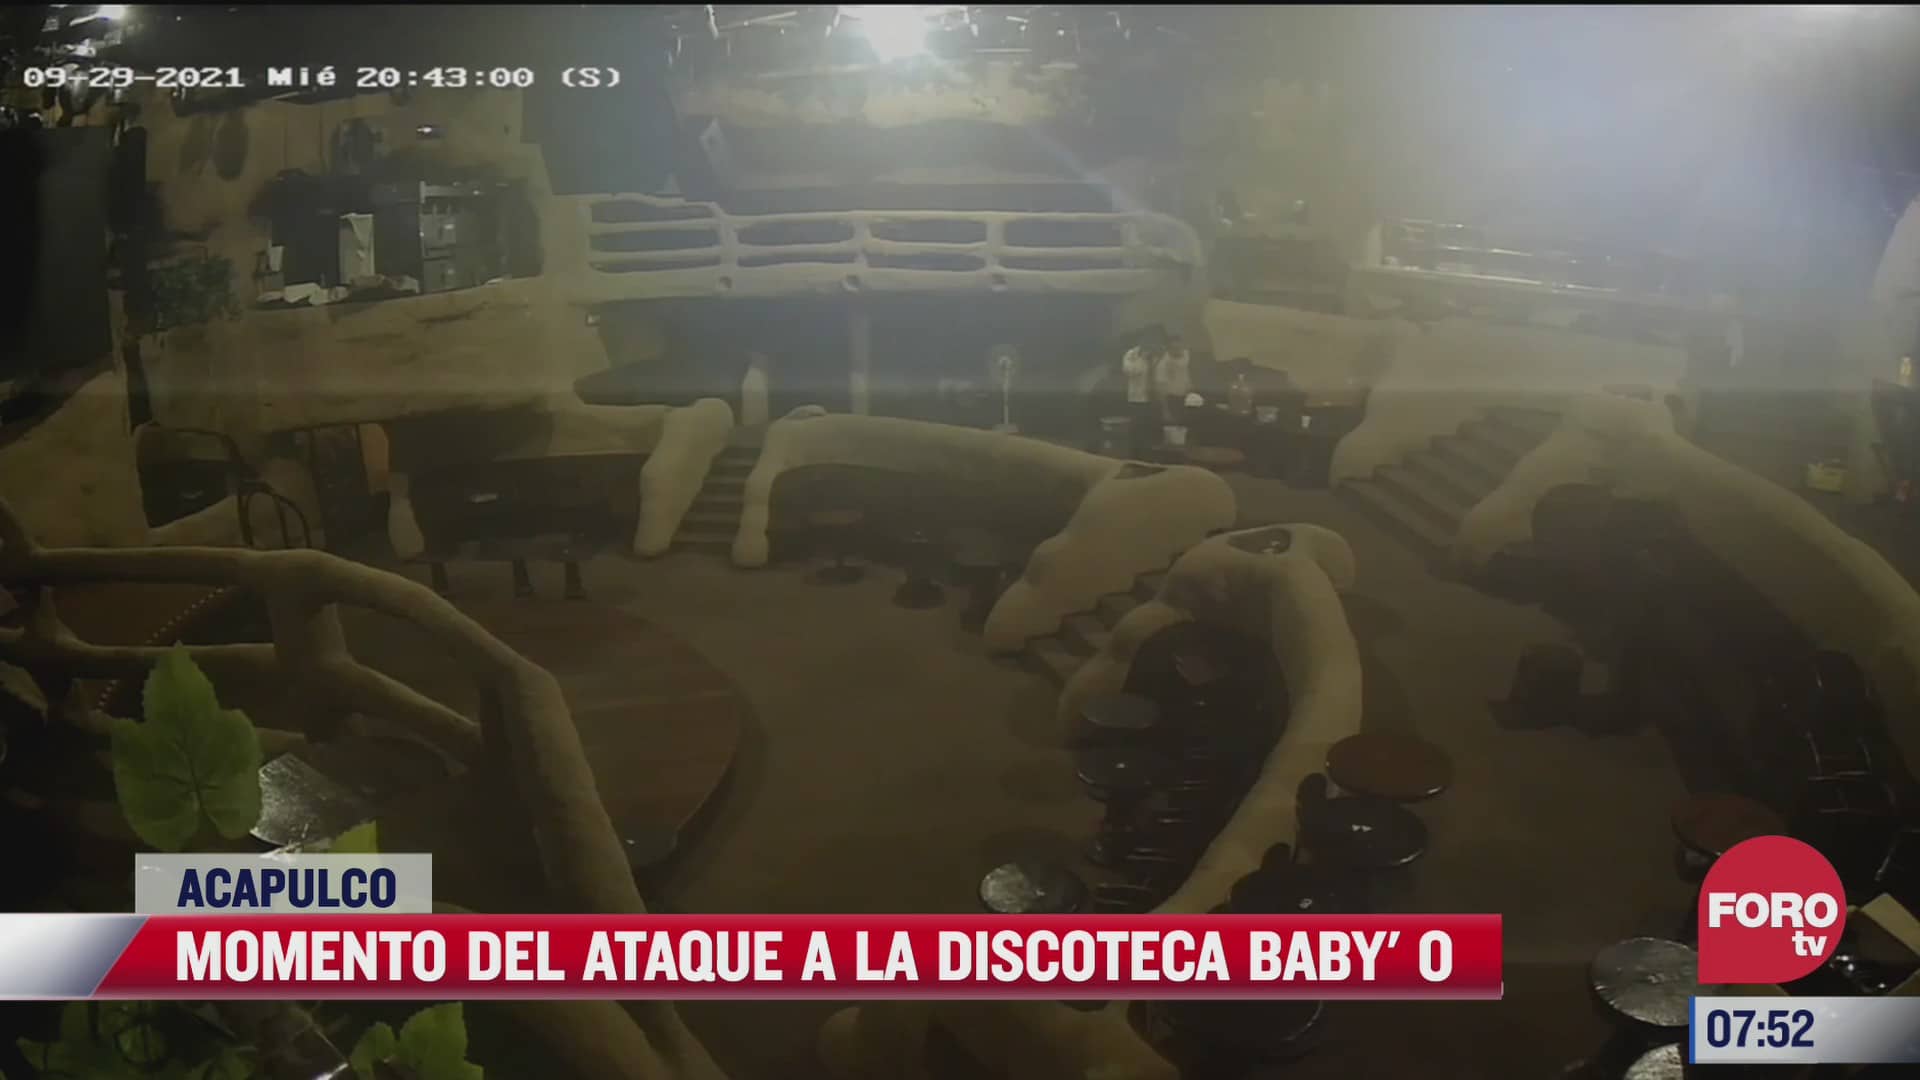 video exclusivo del momento en que hombres armados incendian el babyo en acapulco